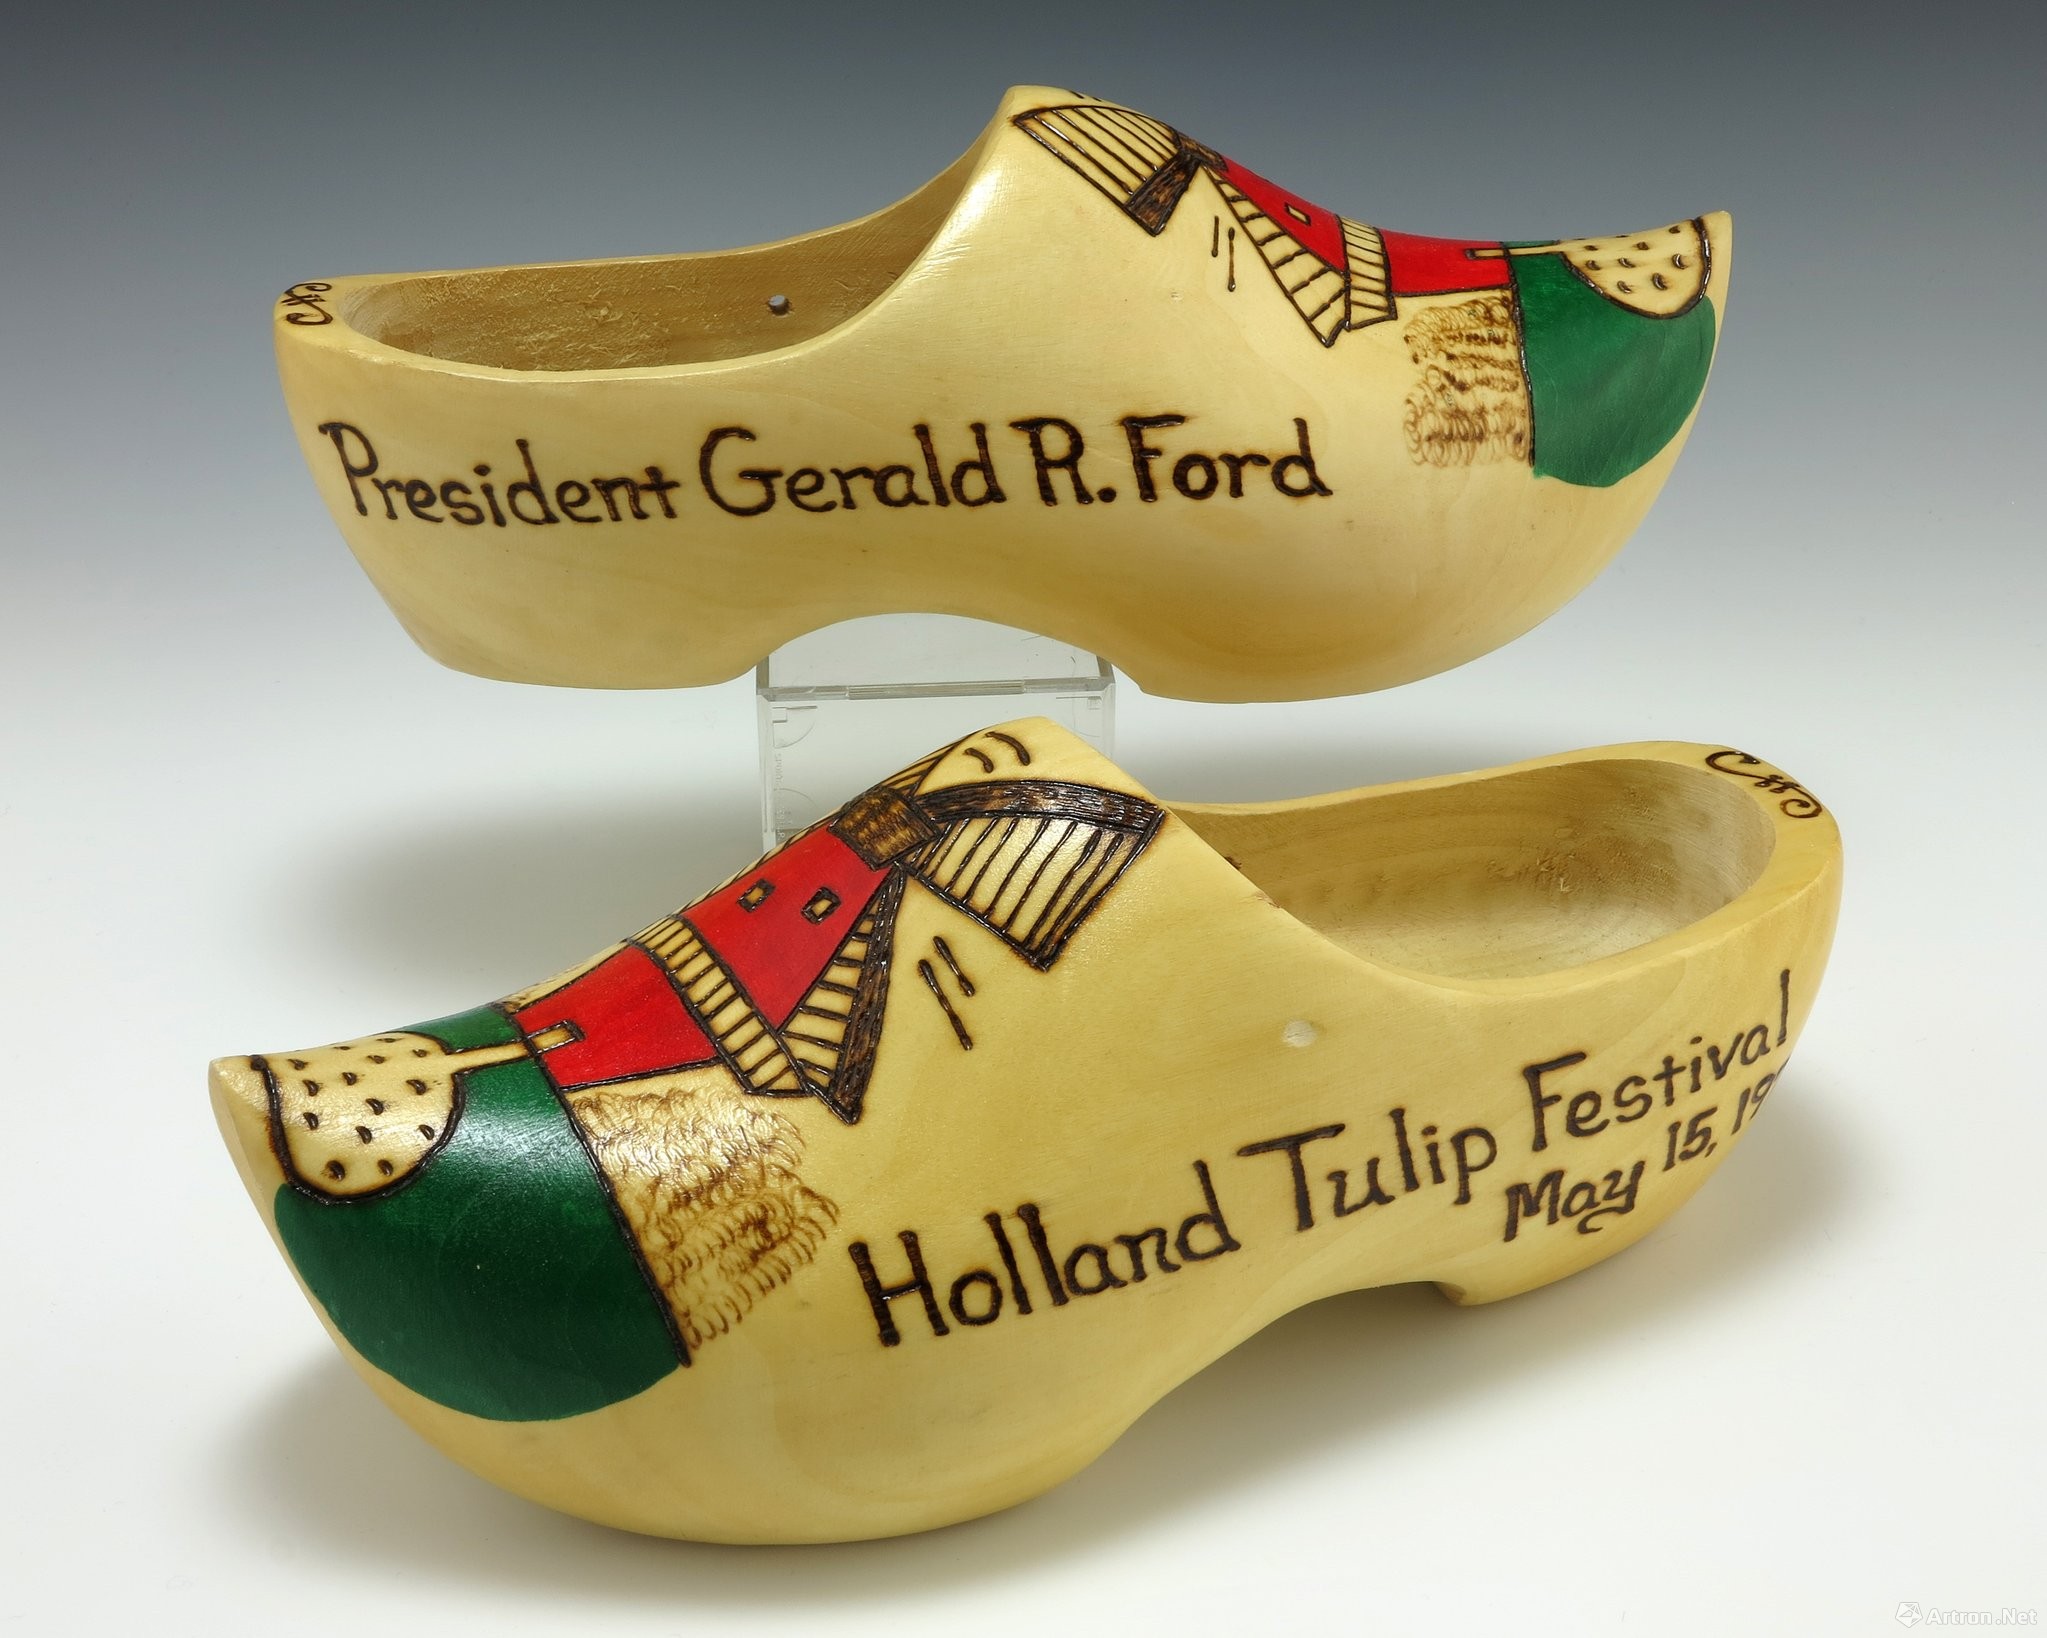 1976年,在密歇根州举行的荷兰郁金香节上,福特总统及其夫人收到的木鞋